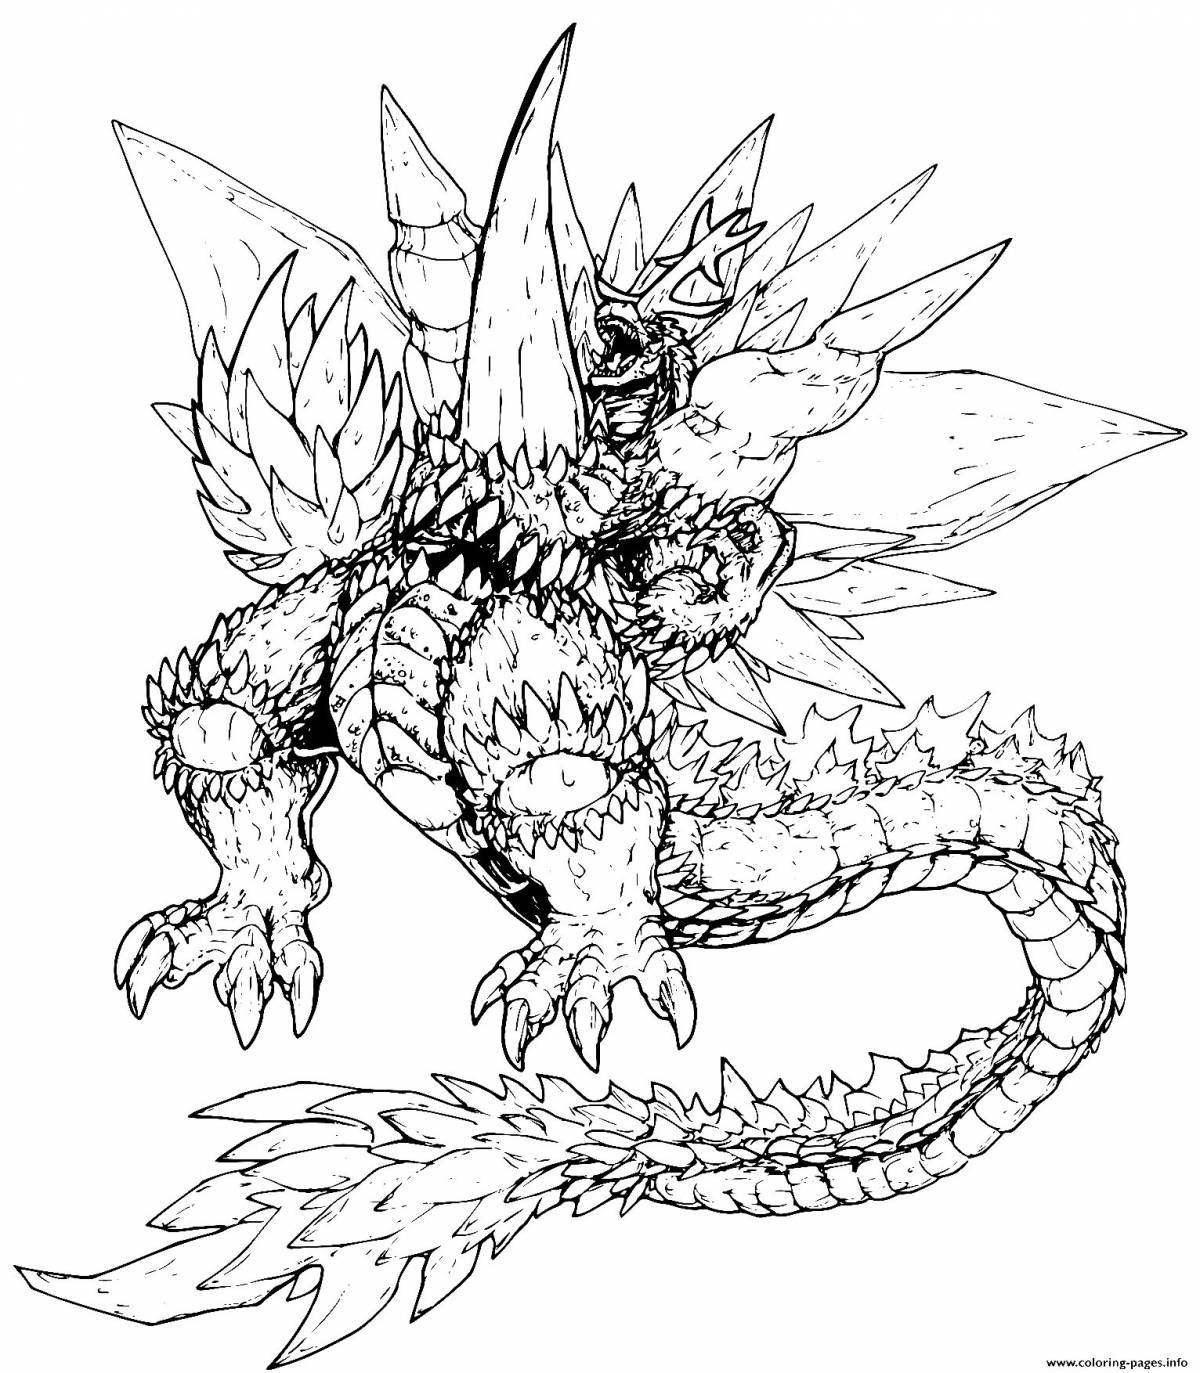 Fascinating Godzilla and Kingidora coloring book